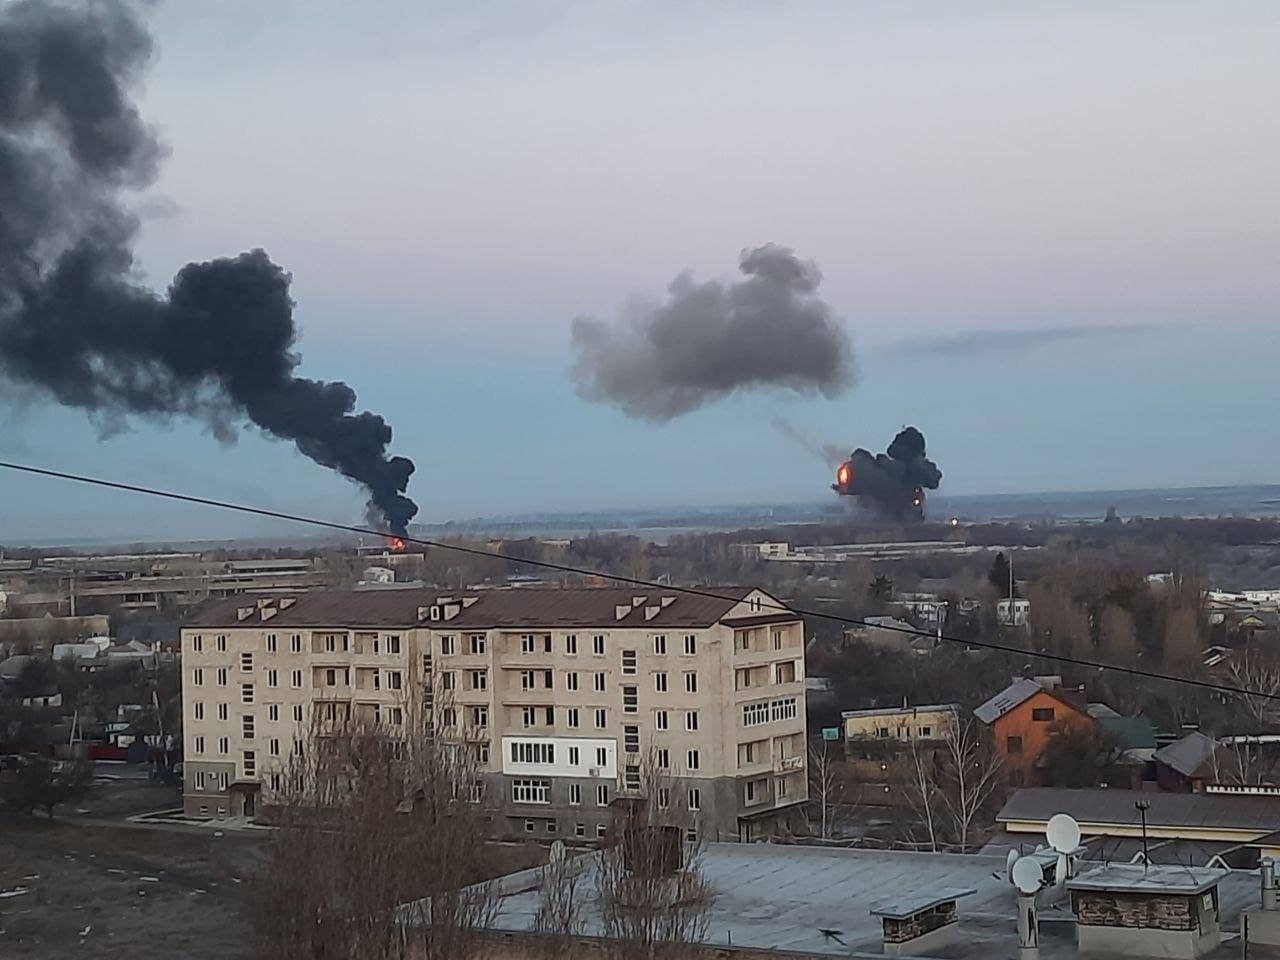 עשן מיתמר מאזור חרקוב לאחר תחילת המתקפה של רוסיה על אוקראינה, 24 בפברואר 2022